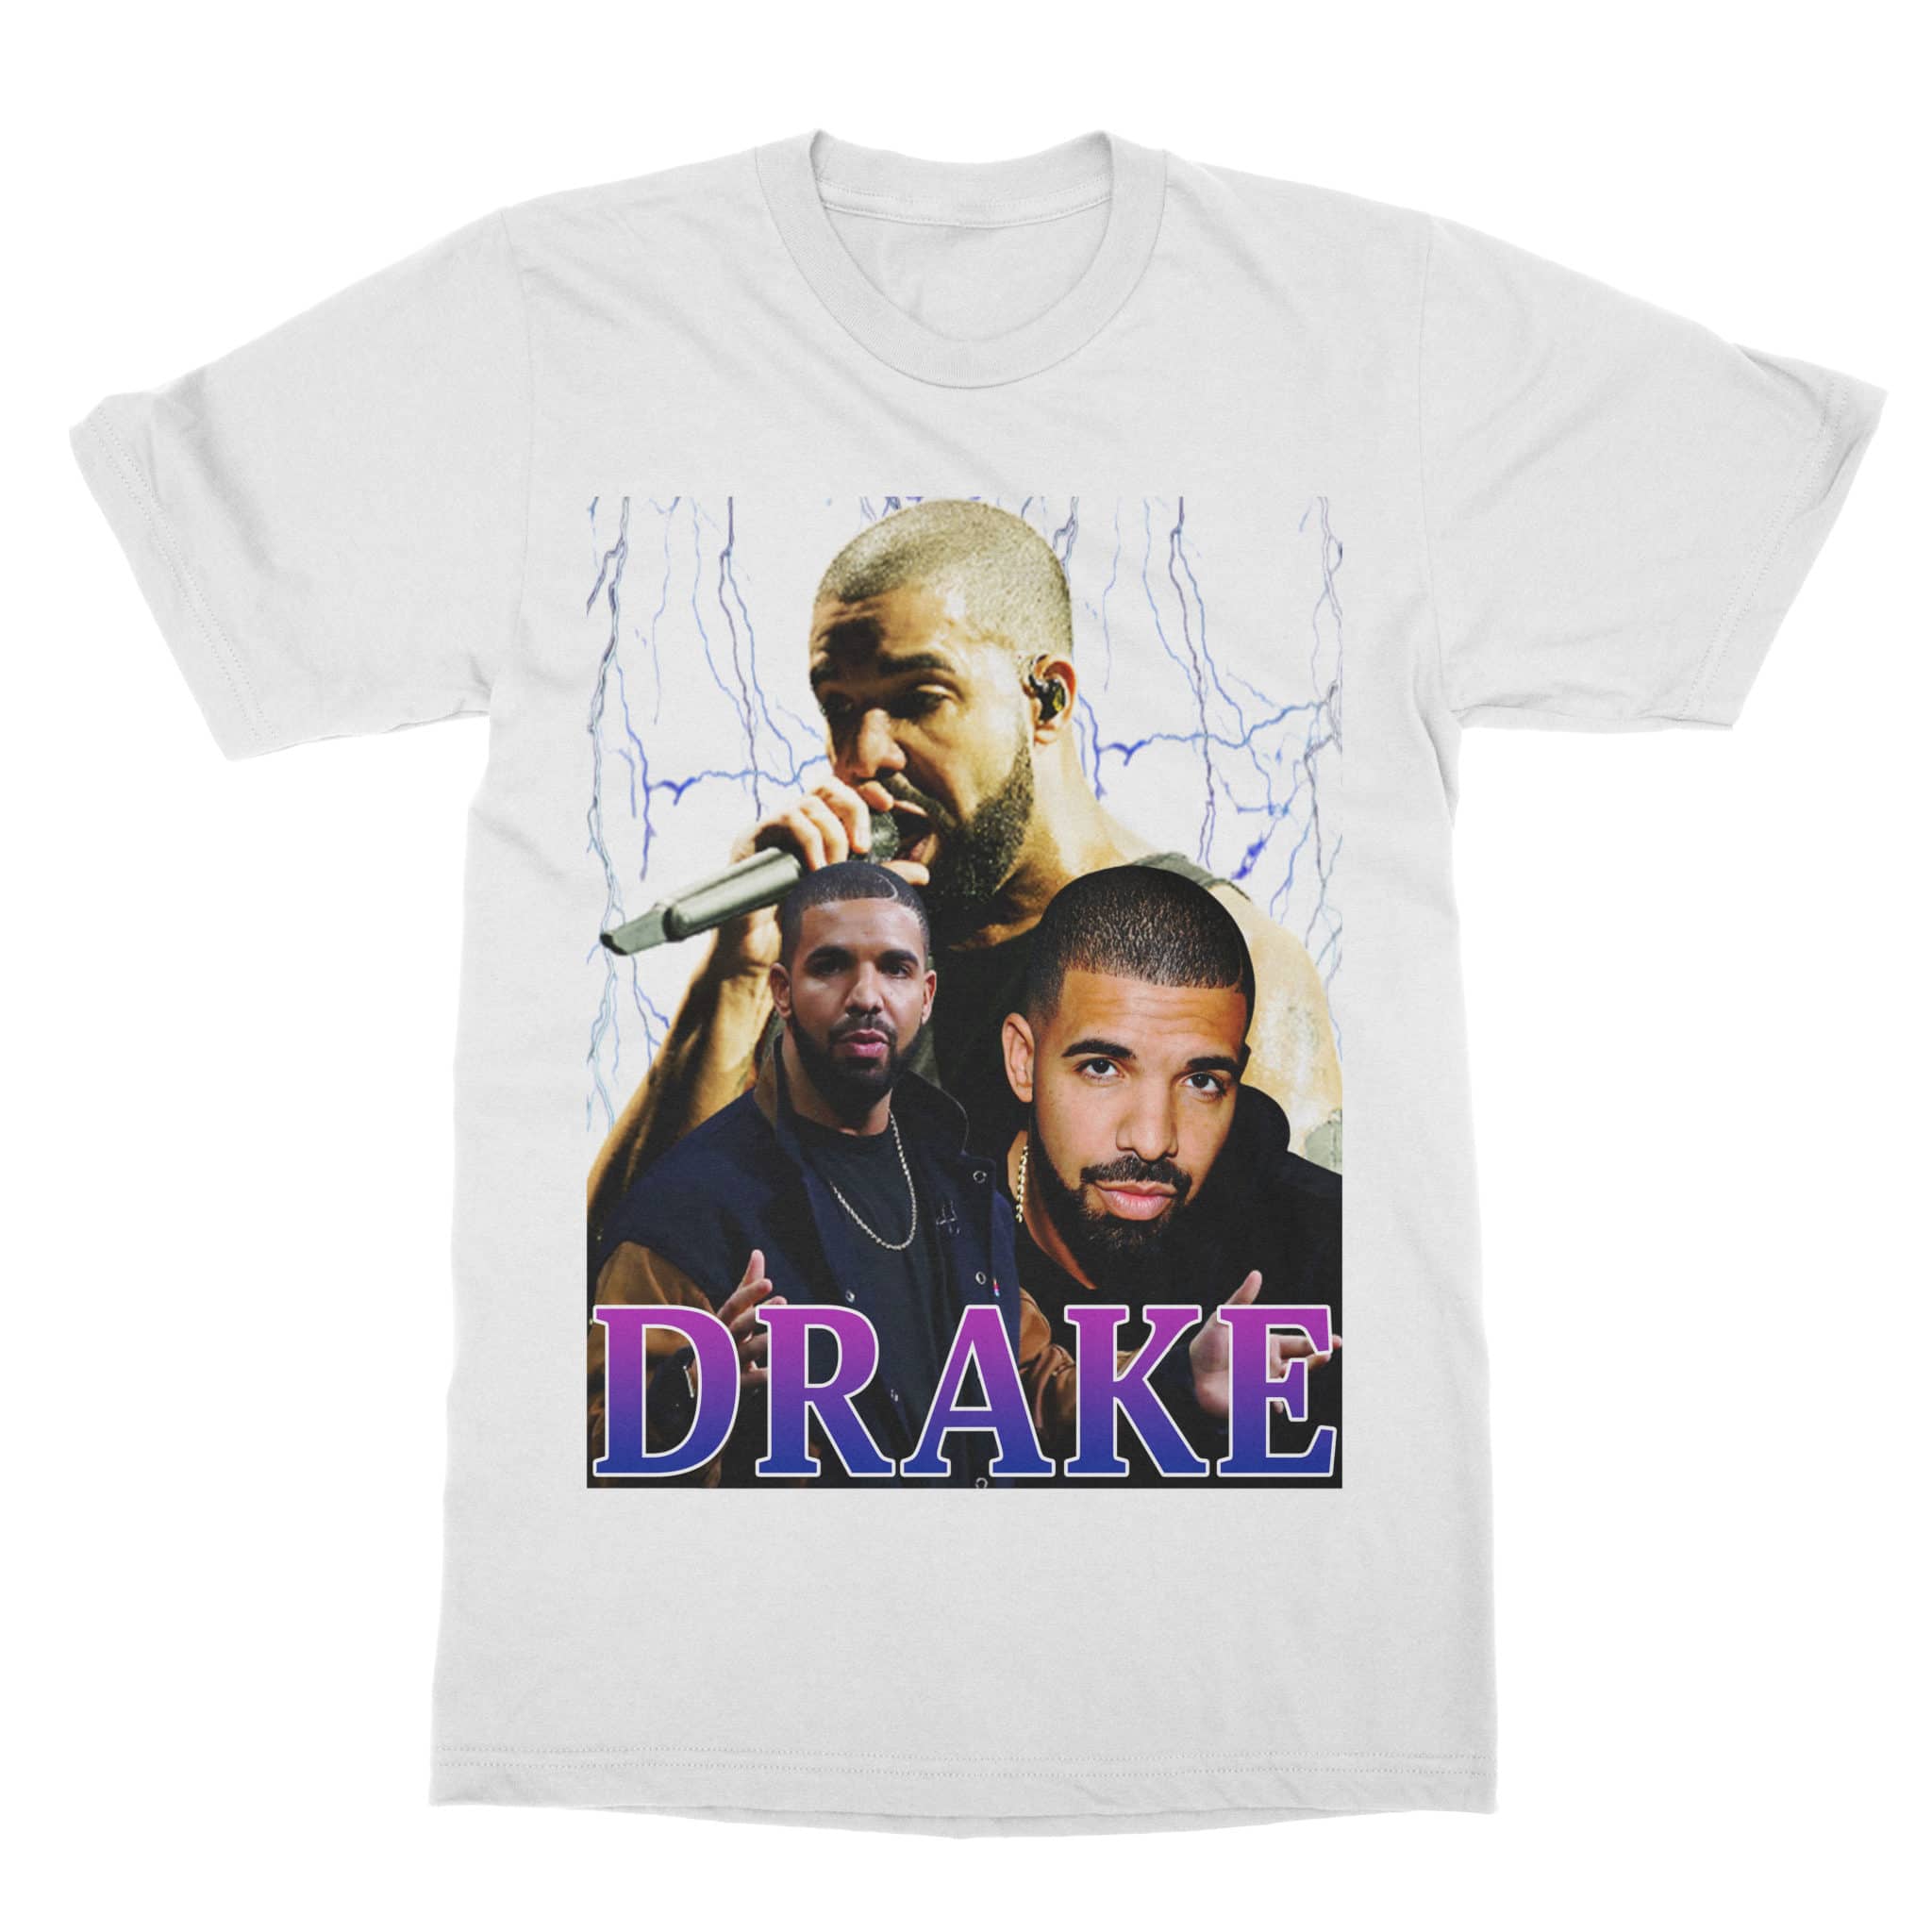 Vintage Style Drake TShirt